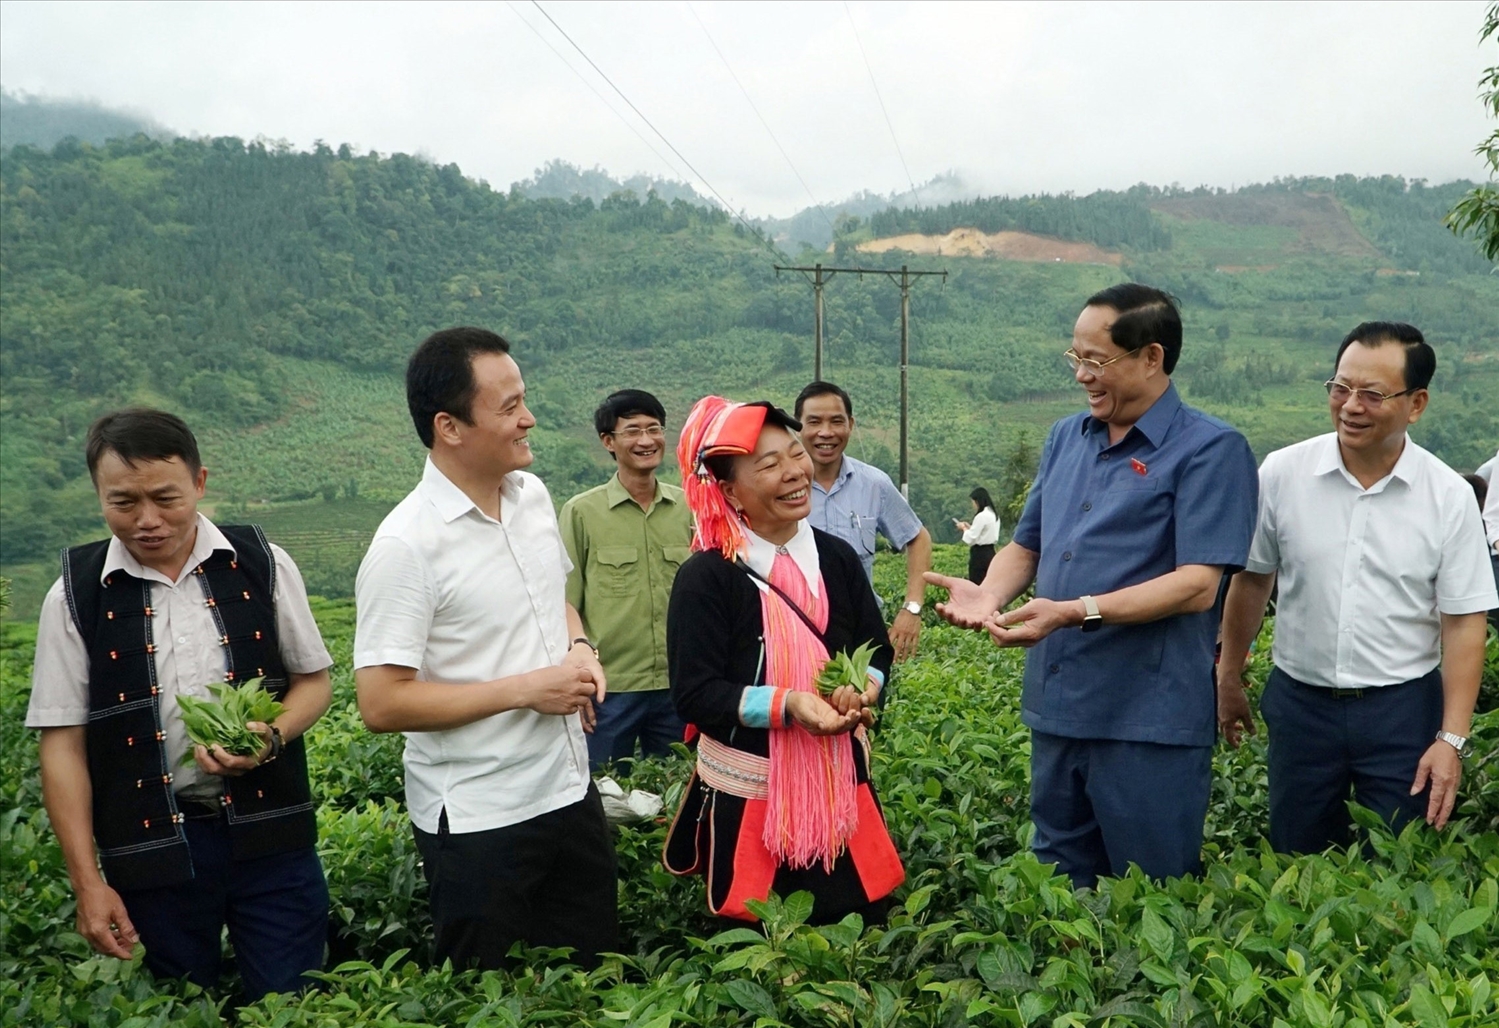 Phó Chủ tịch Quốc hội, Thượng tướng Trần Quang Phương và Đoàn giám sát của Quốc hội khảo sát mô hình trồng chè tại huyện Mường Khương, tỉnh Lào Cai